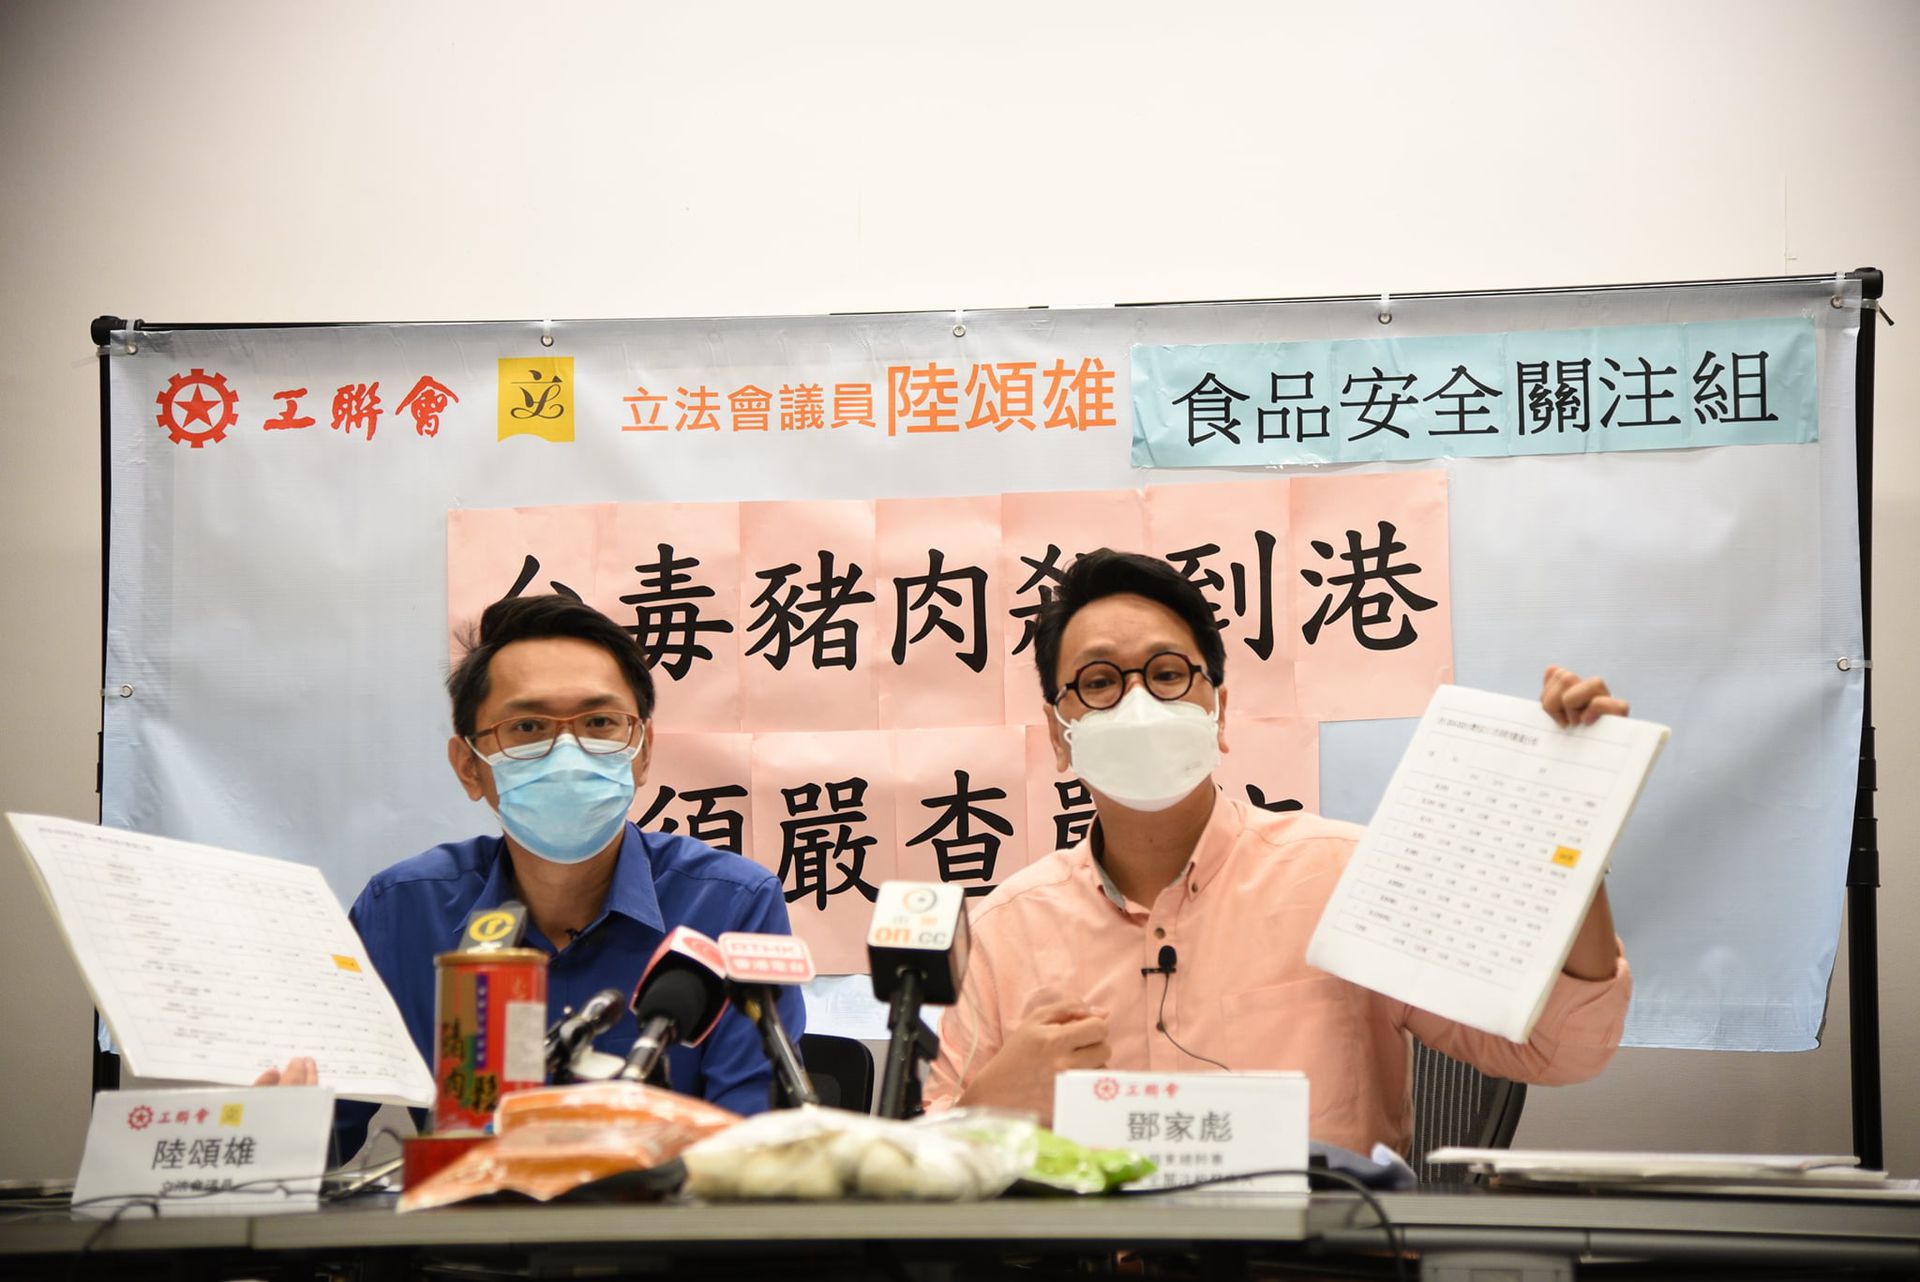 向香港看齐澳门宣布停止运作驻台办事处 多维新闻 台湾